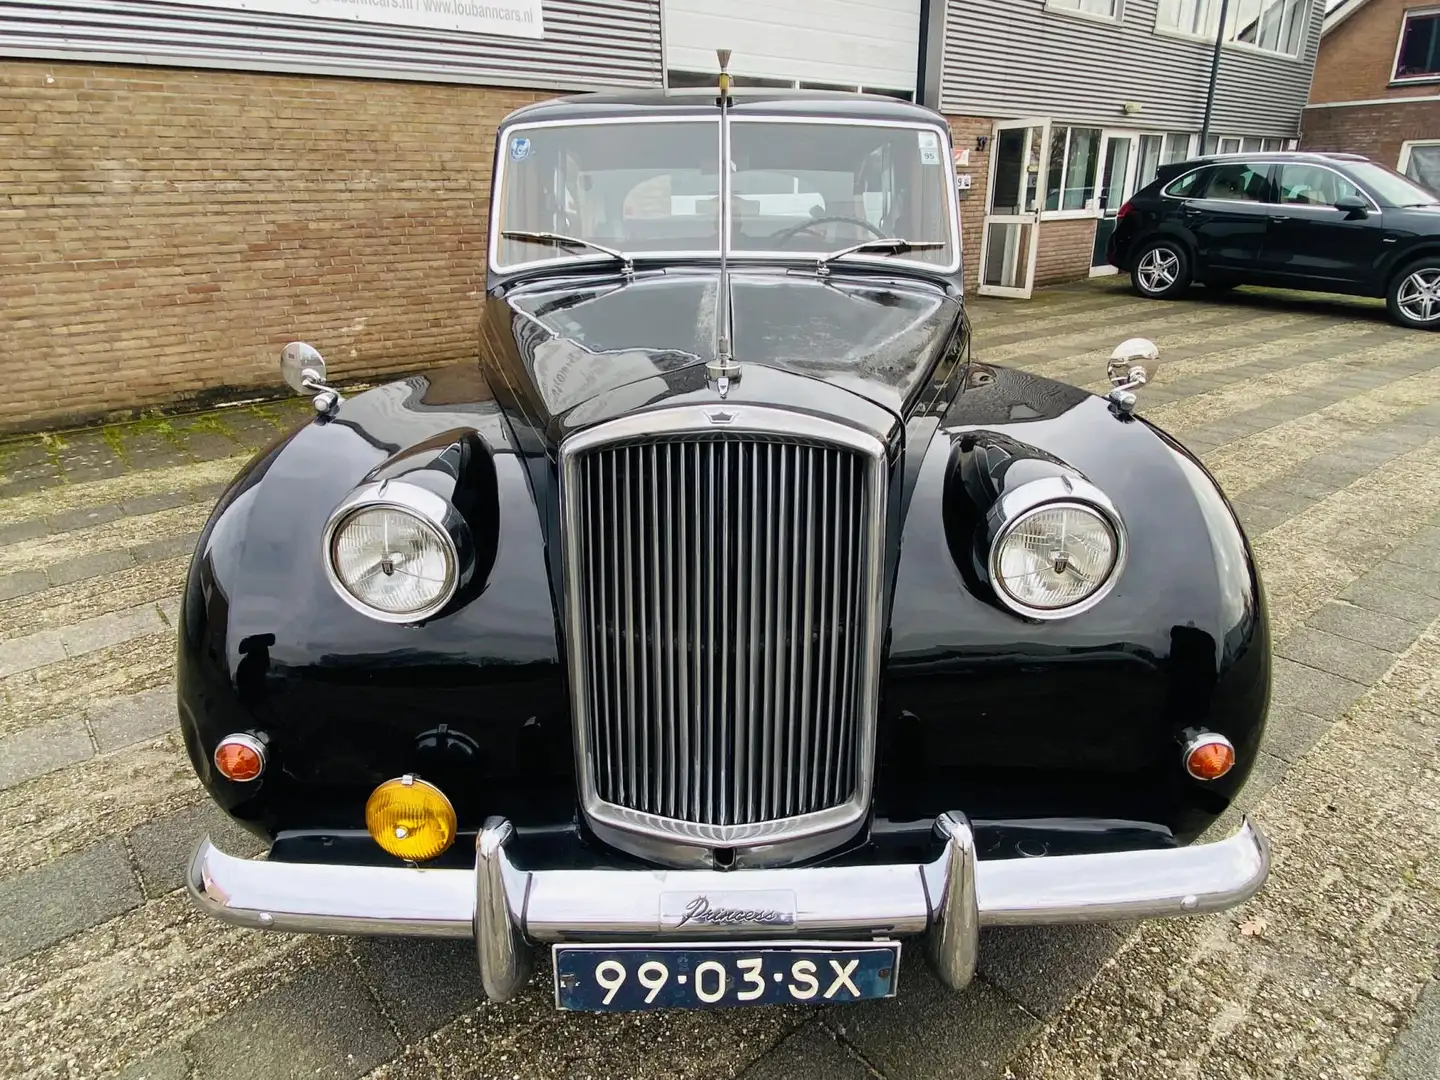 Oldtimer Rolls Royce Van den plas princess Links gestuurd crna - 2